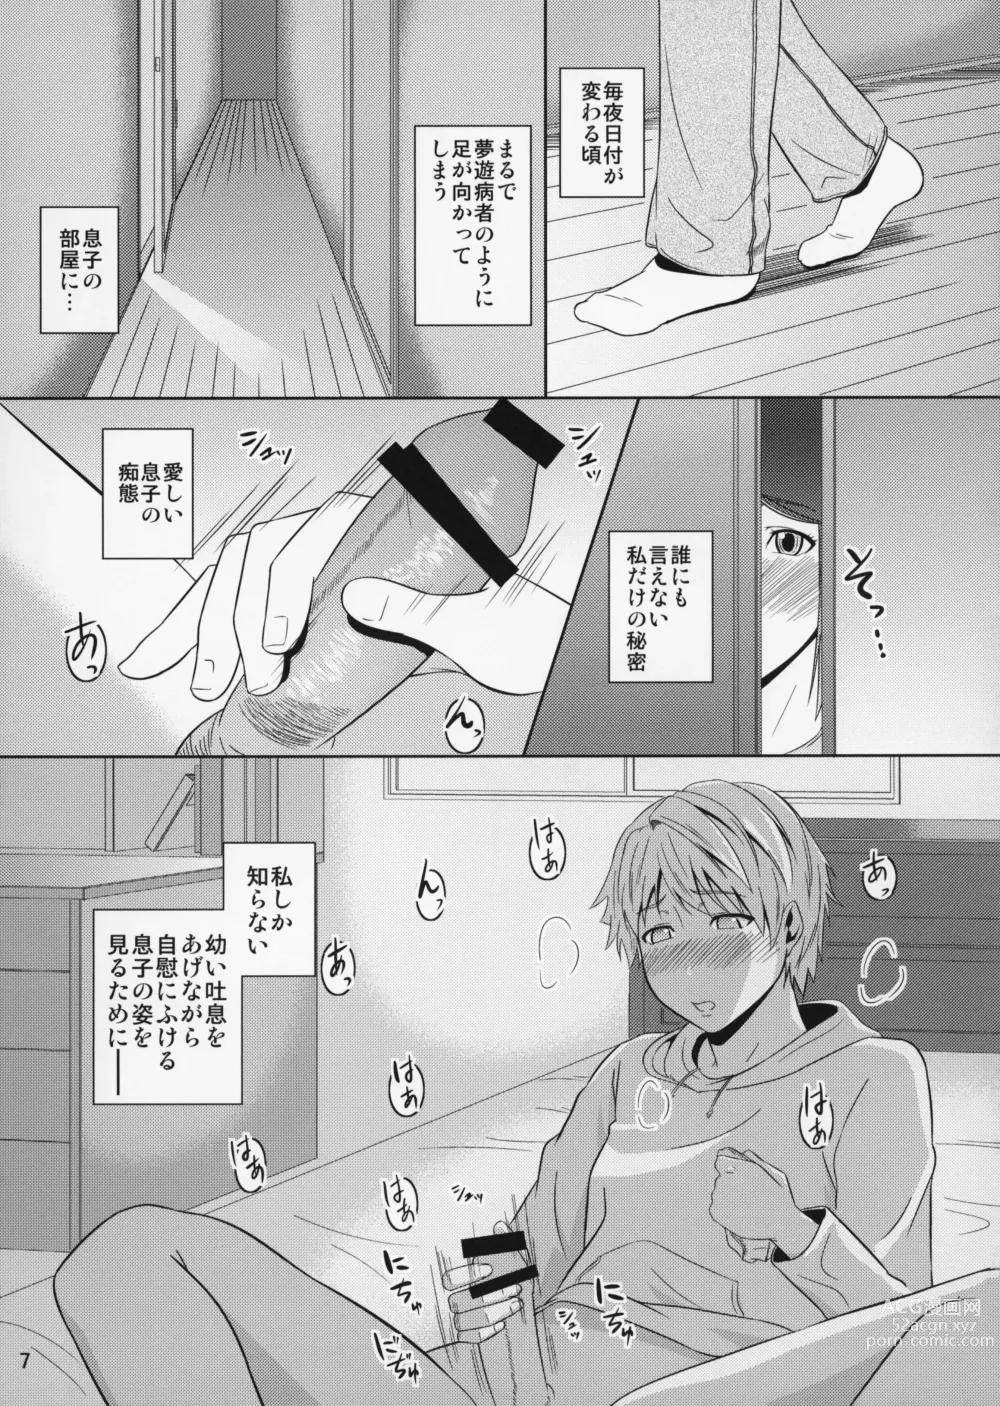 Page 8 of doujinshi Boketsu o Horu 11